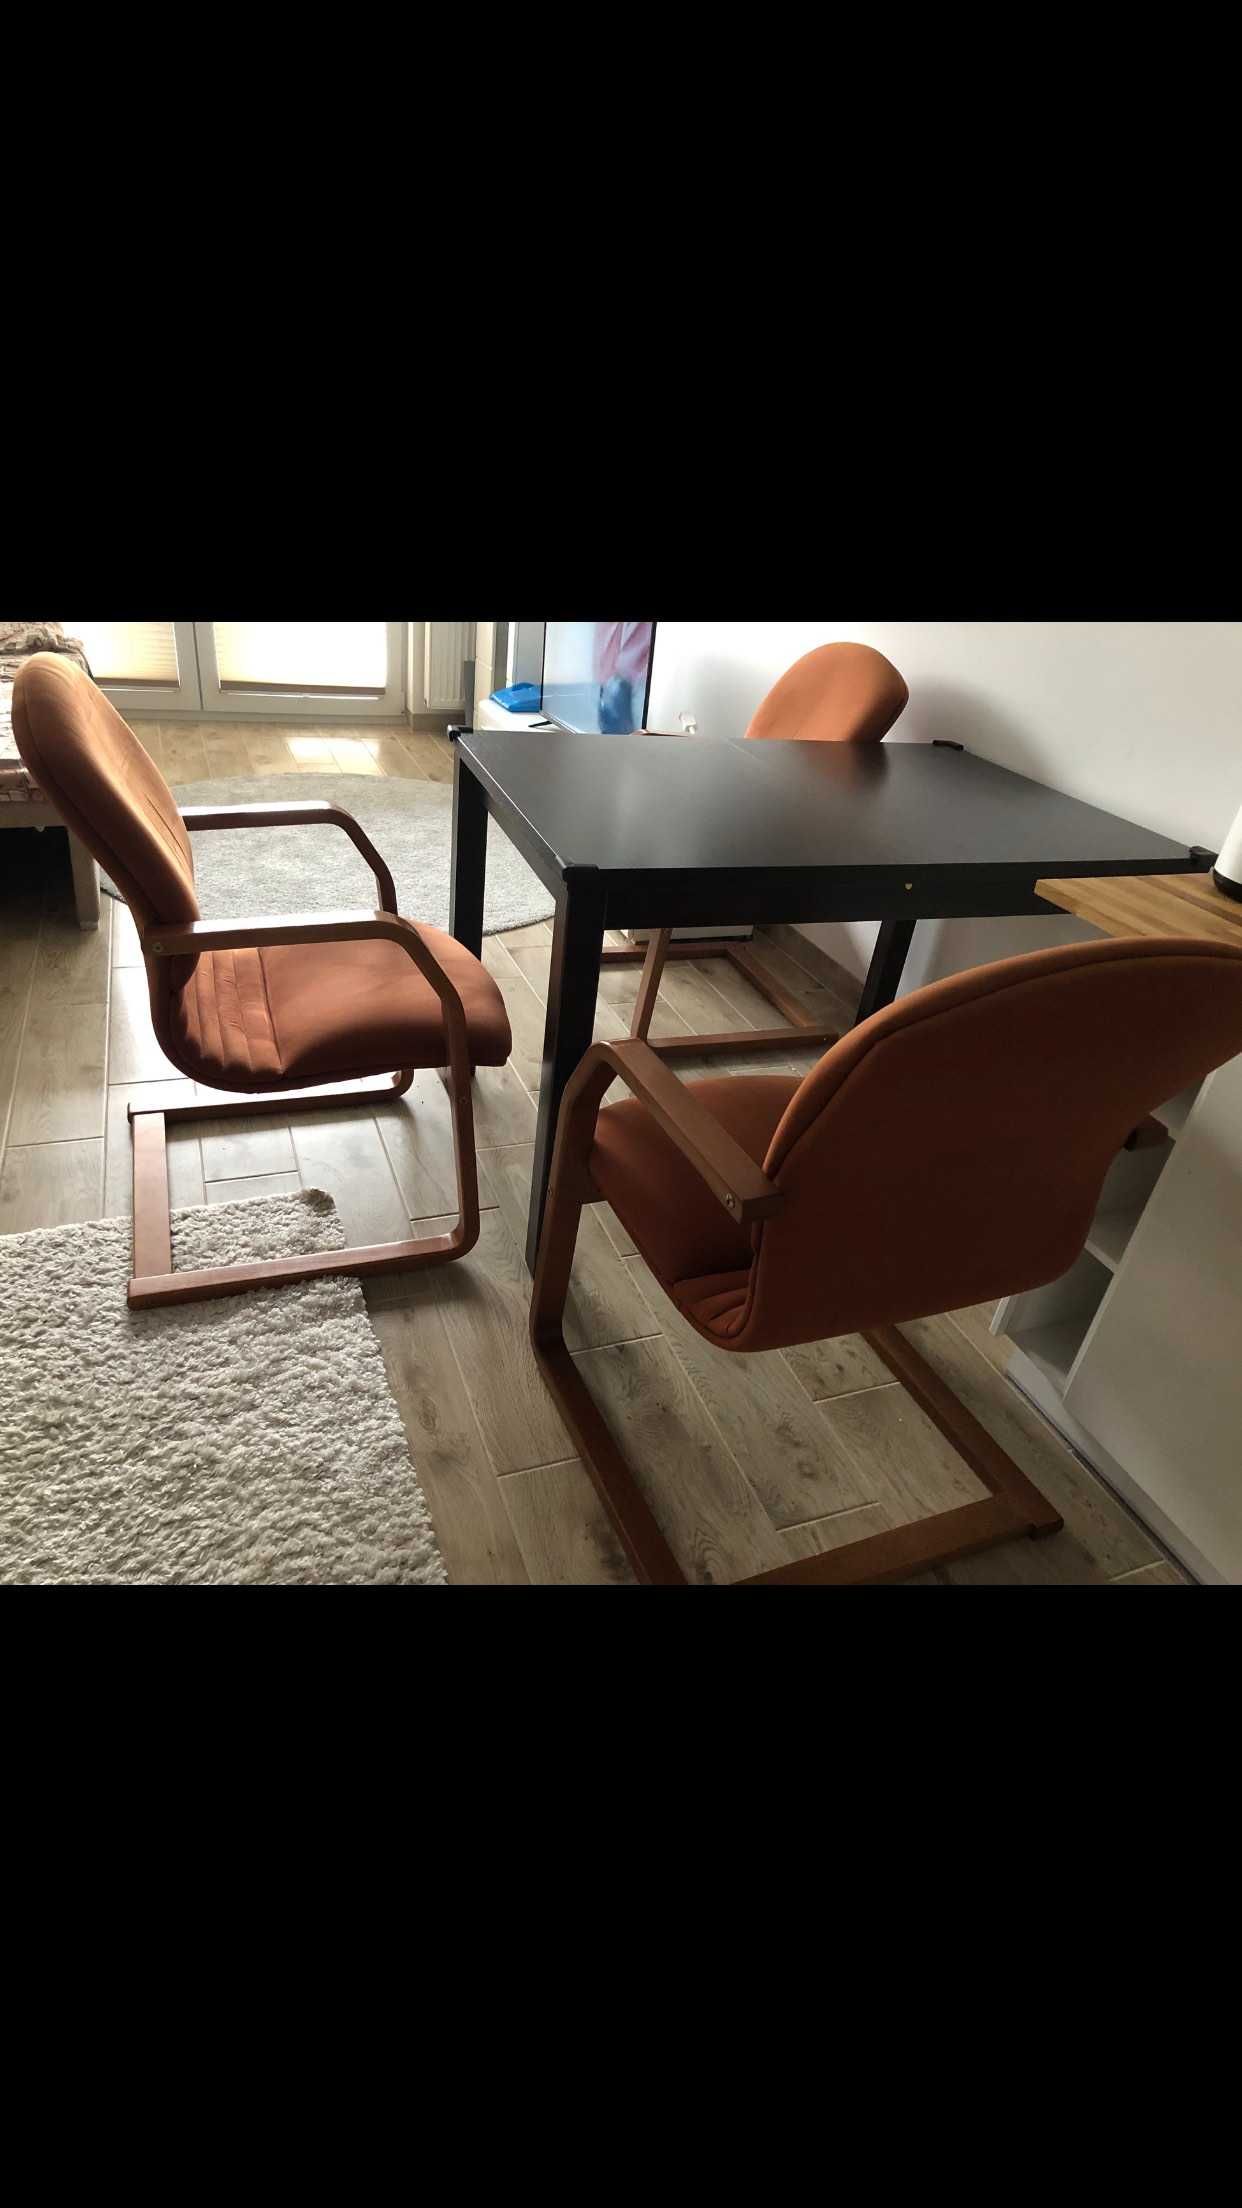 Stół i 3 krzesła